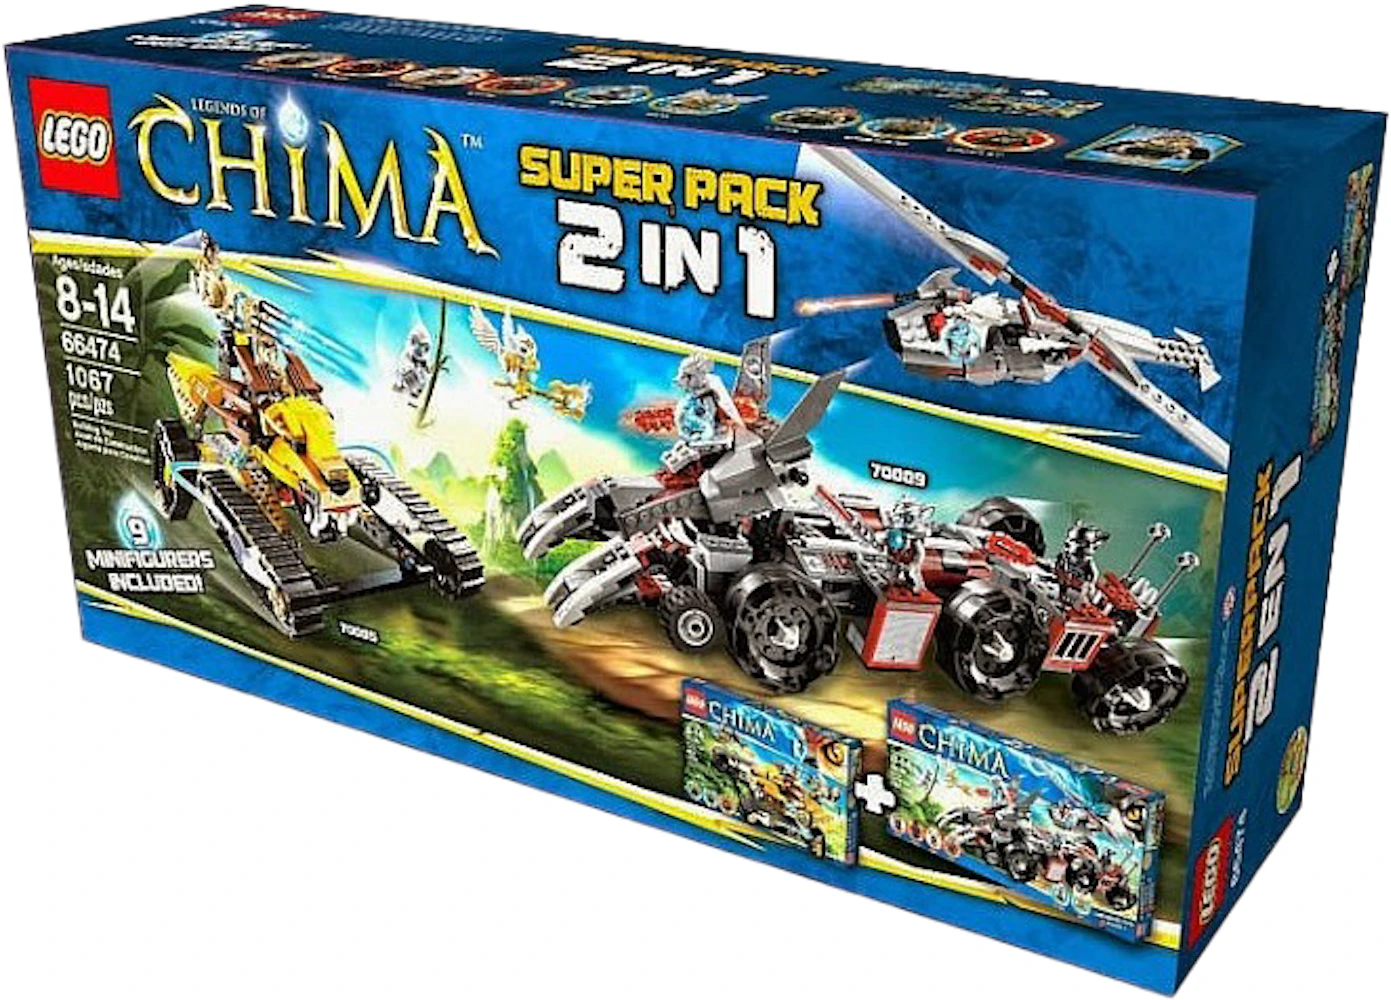 LEGO Chima Super Pack Set 66474 - US